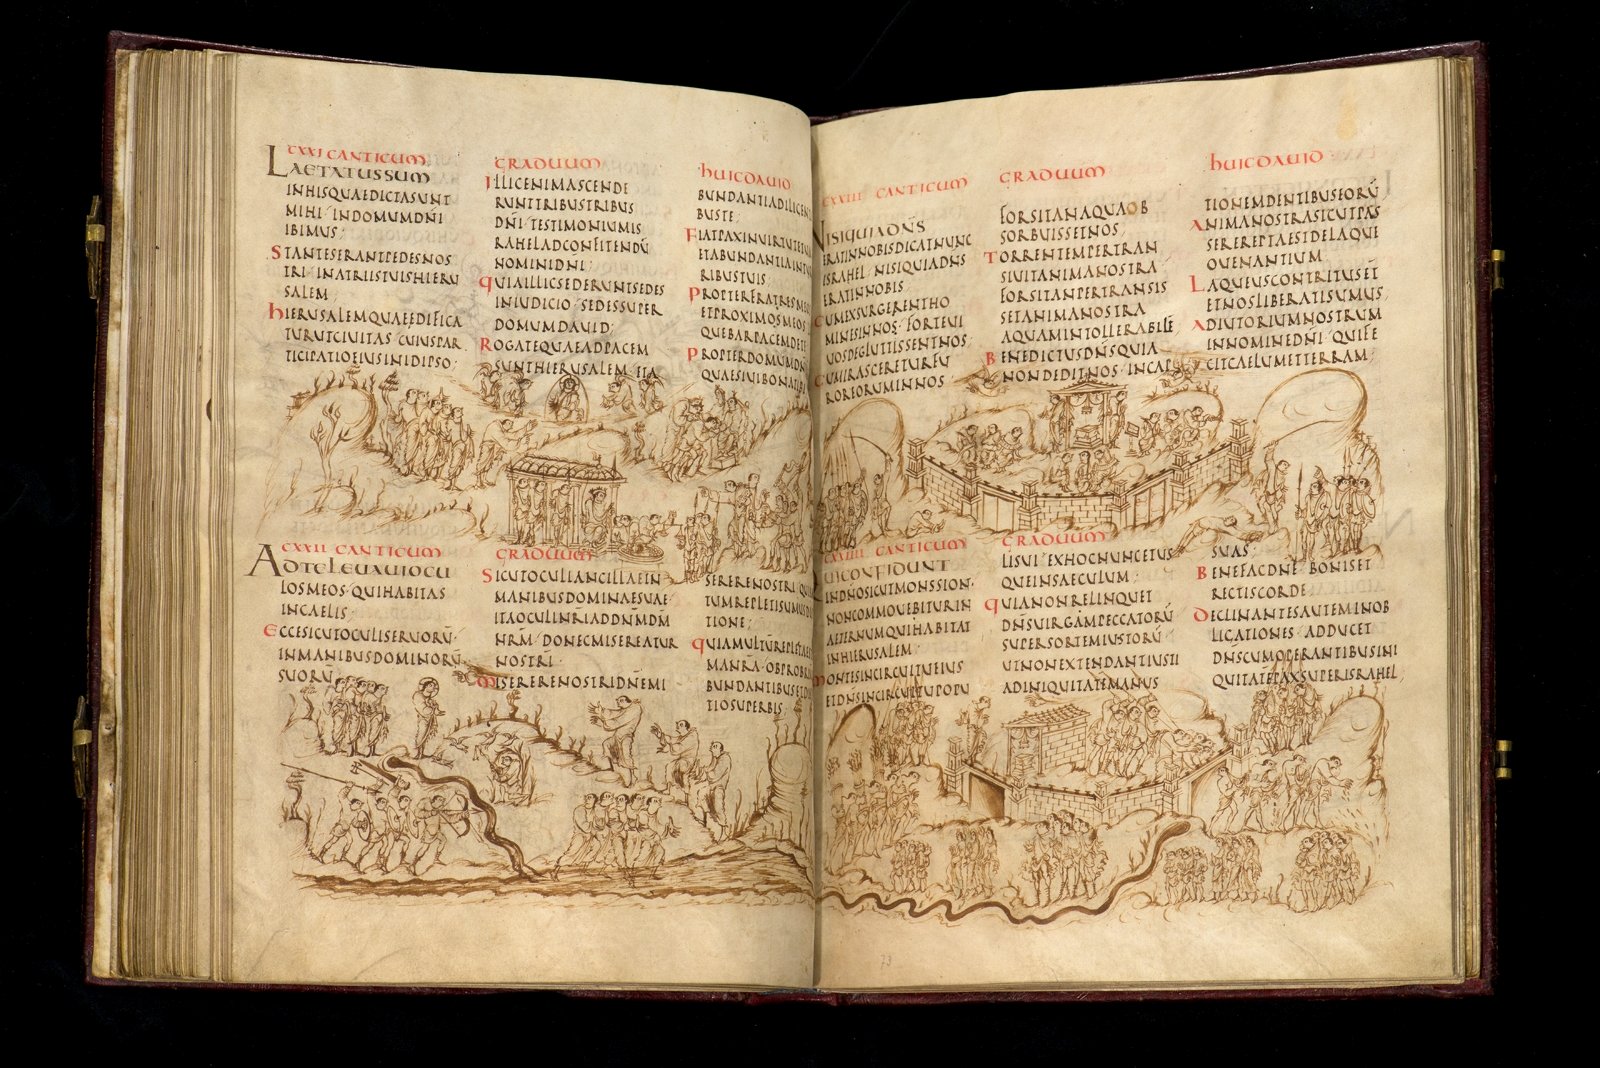 Twee pagina's met tekst en tekeningen uit het Utrechtse Psalter